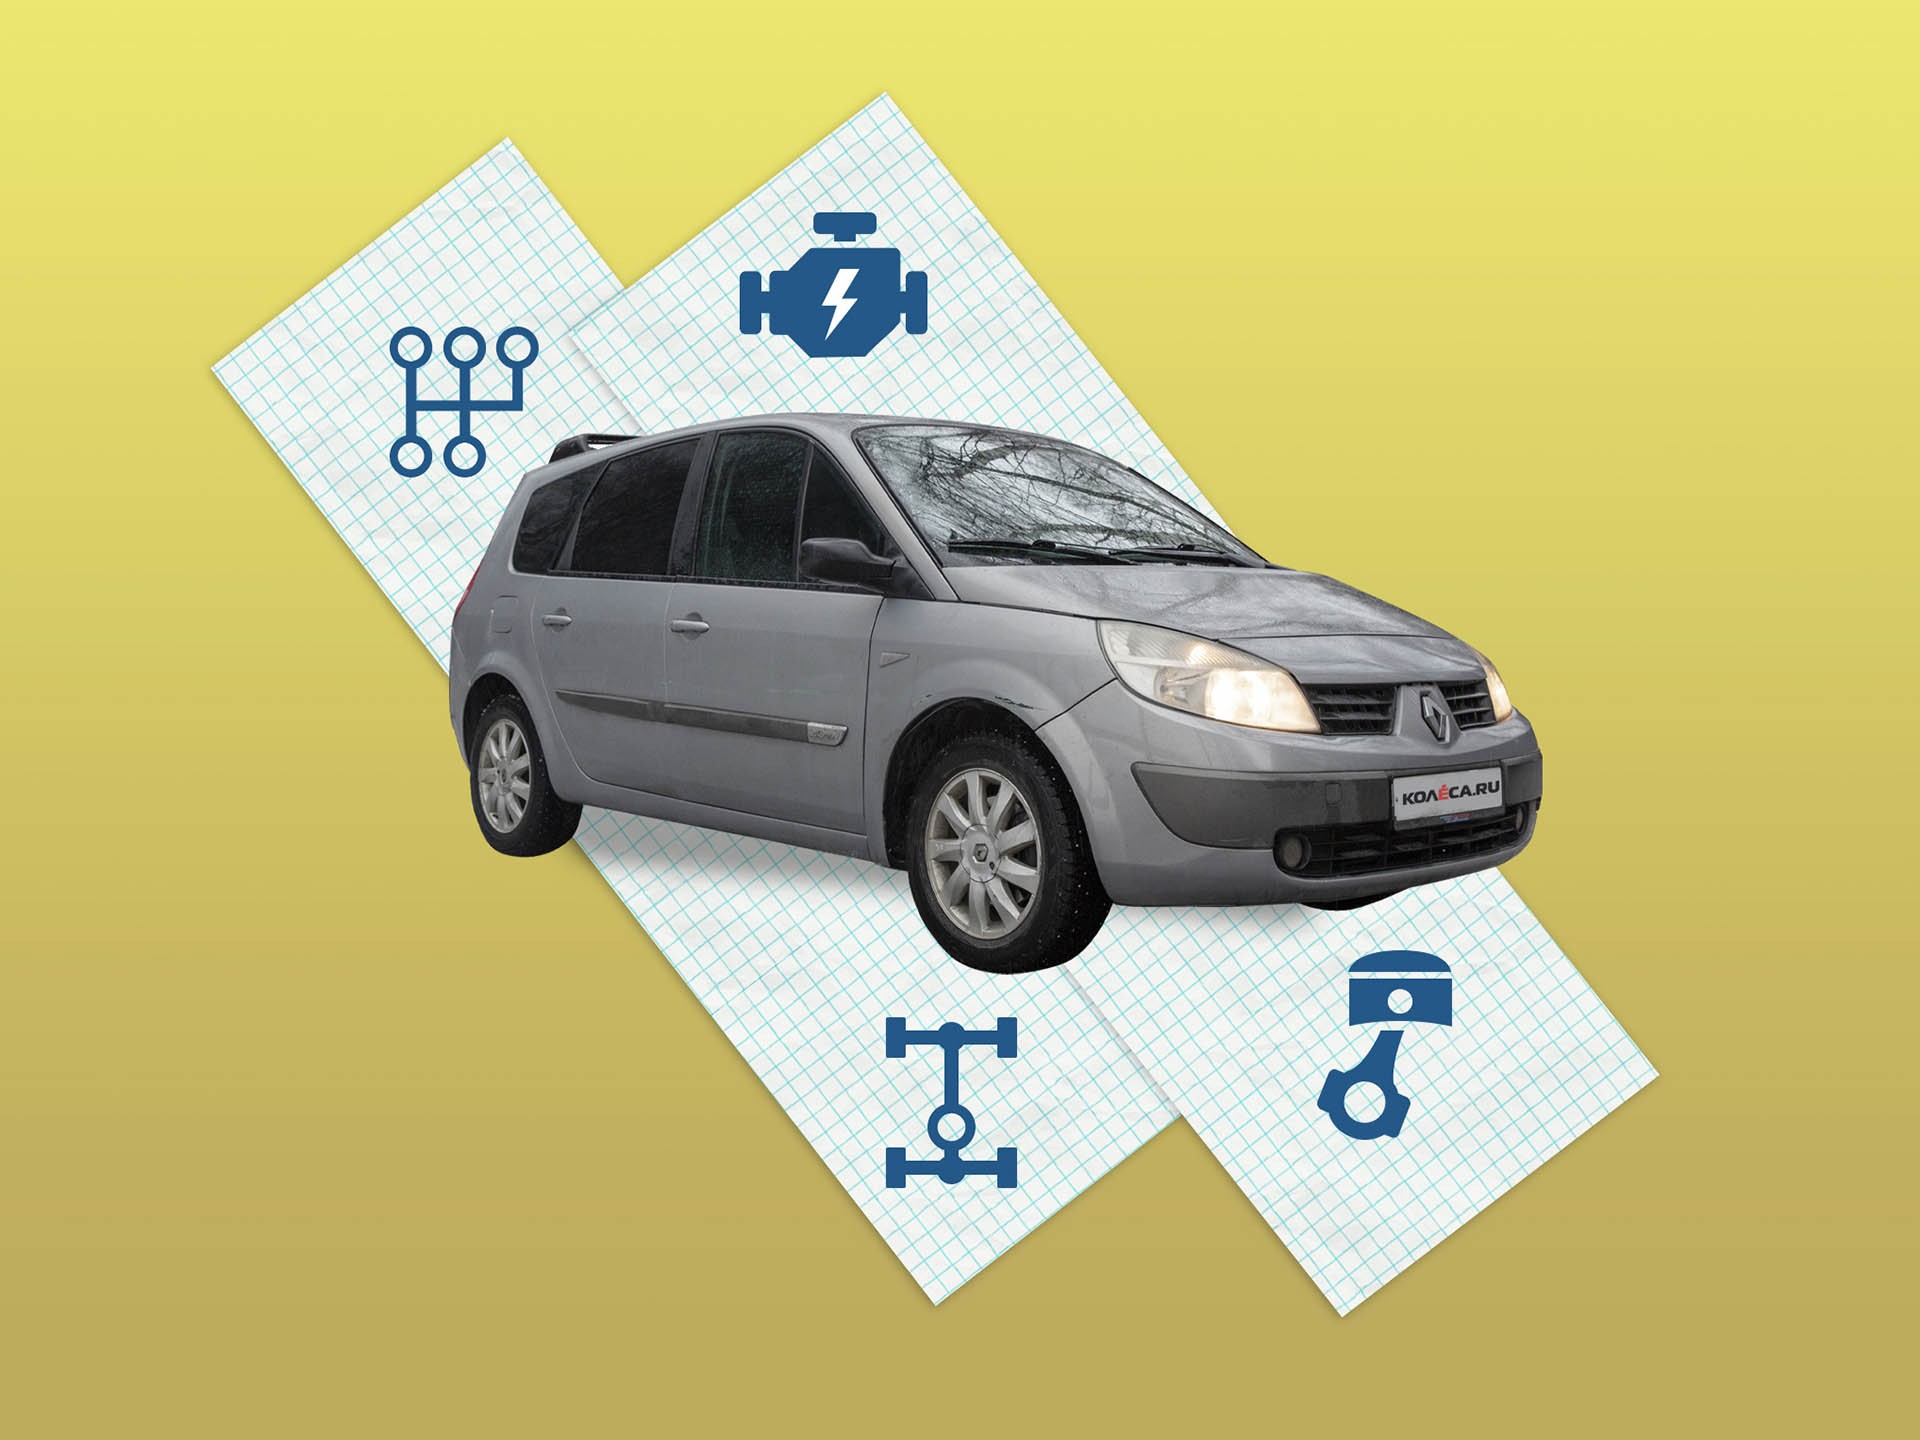 Renault Scenic II (2003-2009) цена, технические характеристики, фото, видео тест-драйв